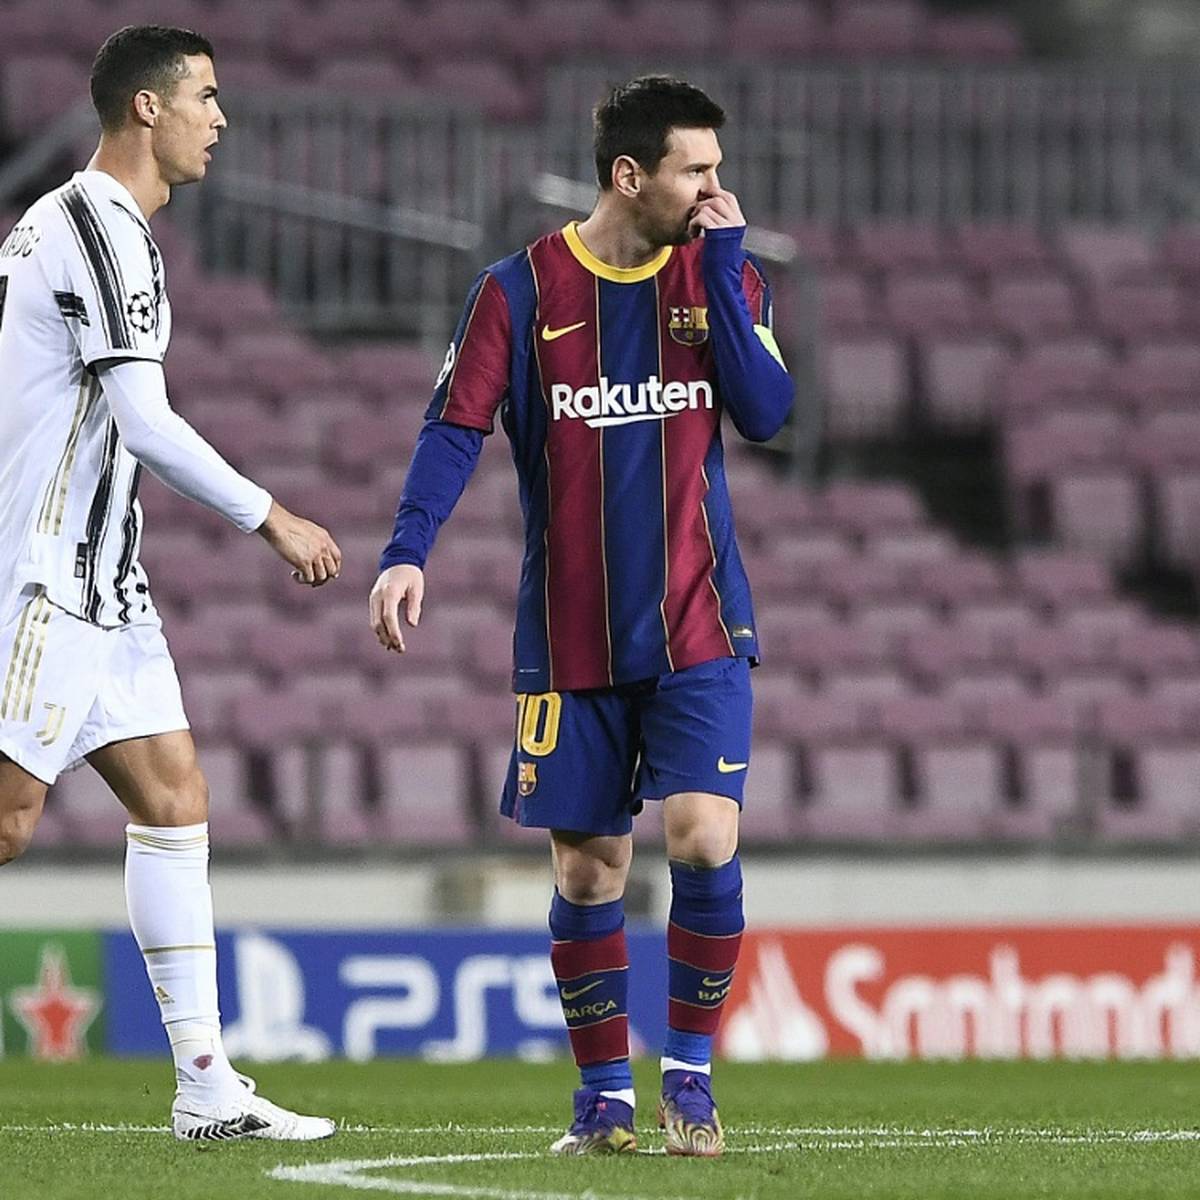 Foto von Messi und Ronaldo könnte eine Referenz auf eine der größten  Schachpartien der Geschichte sein, die mit einem Remis endete - Fußball